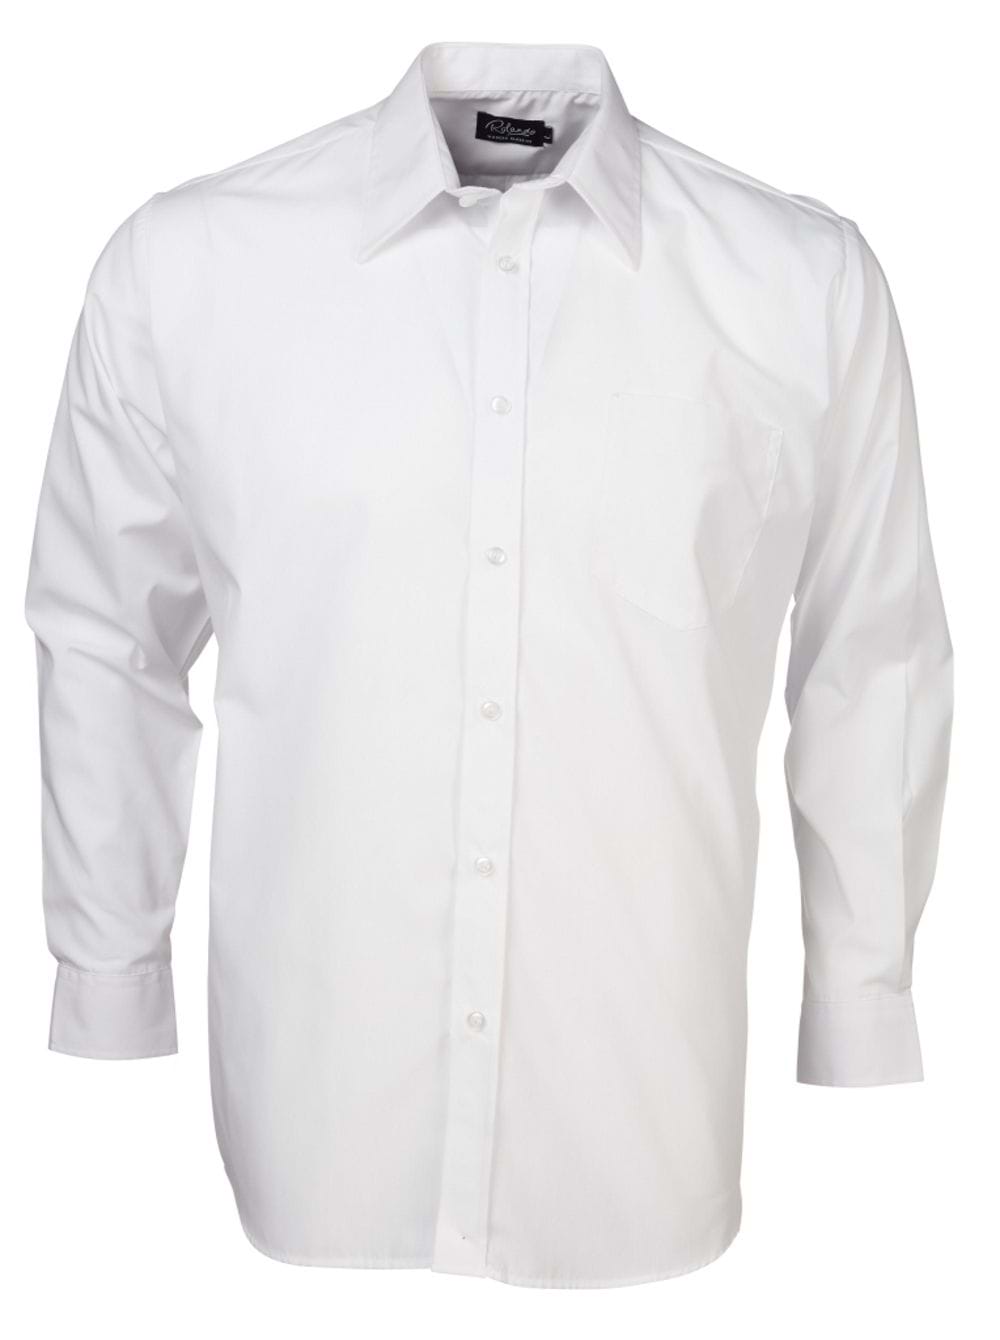 Mens P070 L/S Shirt - White